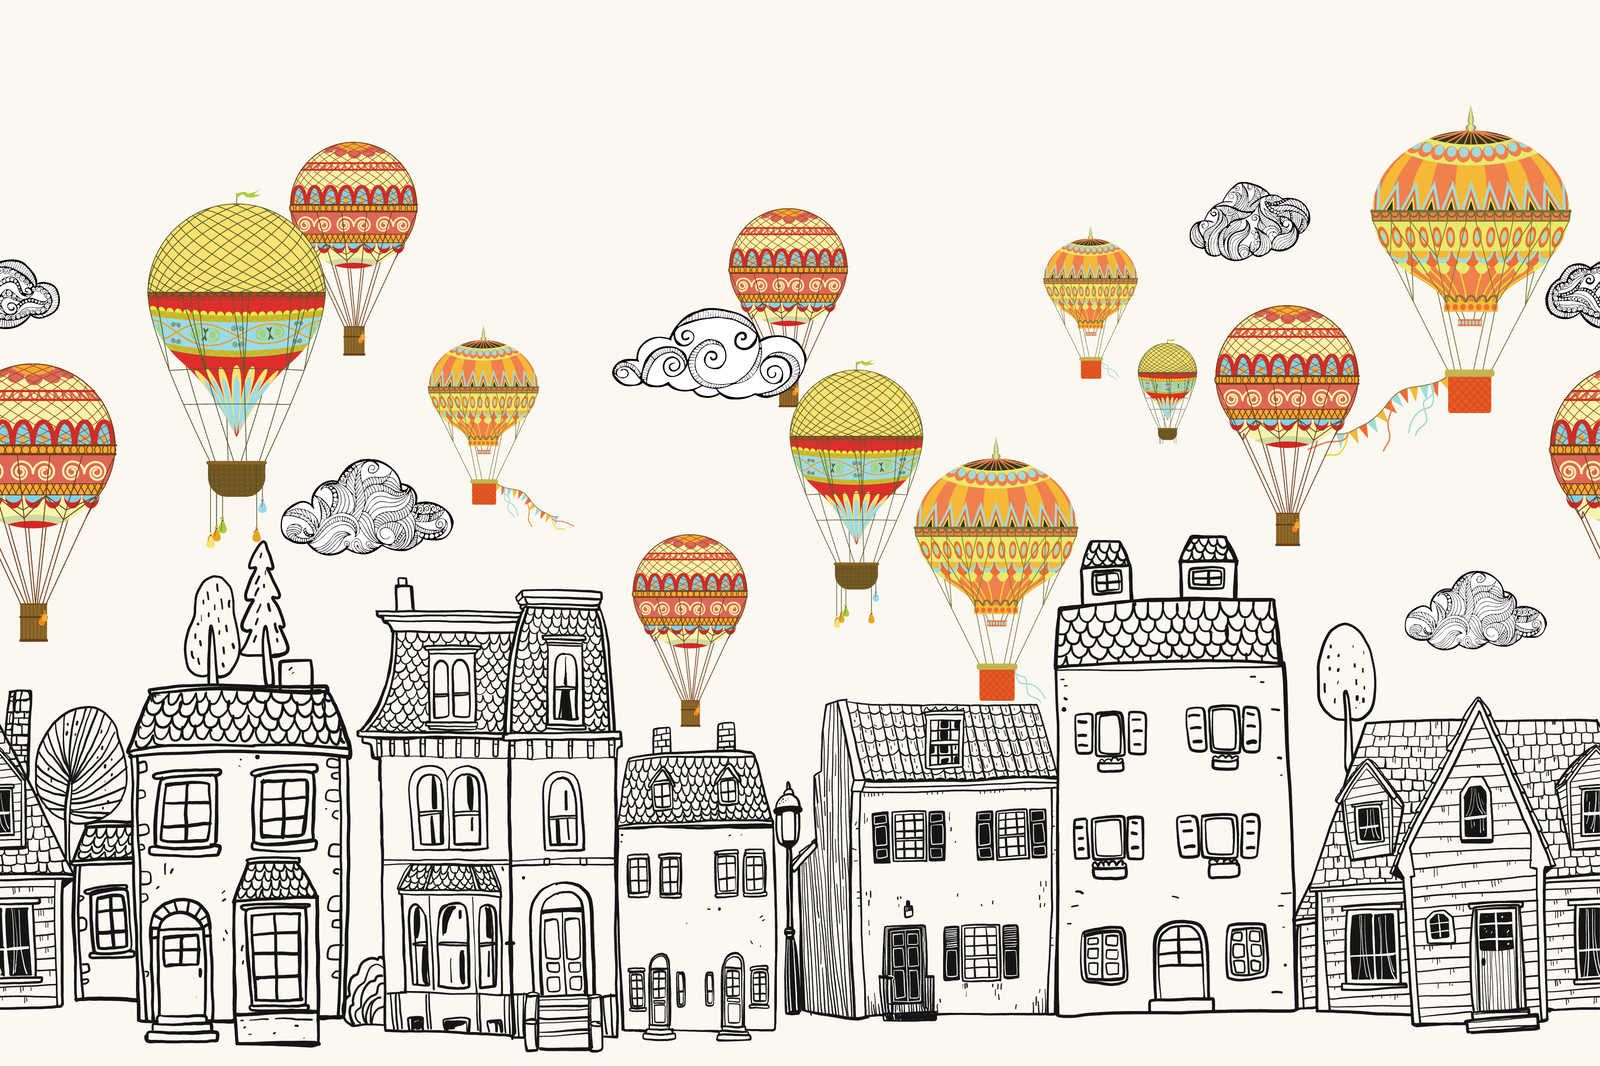             Toile Petite ville avec montgolfières - 90 cm x 60 cm
        